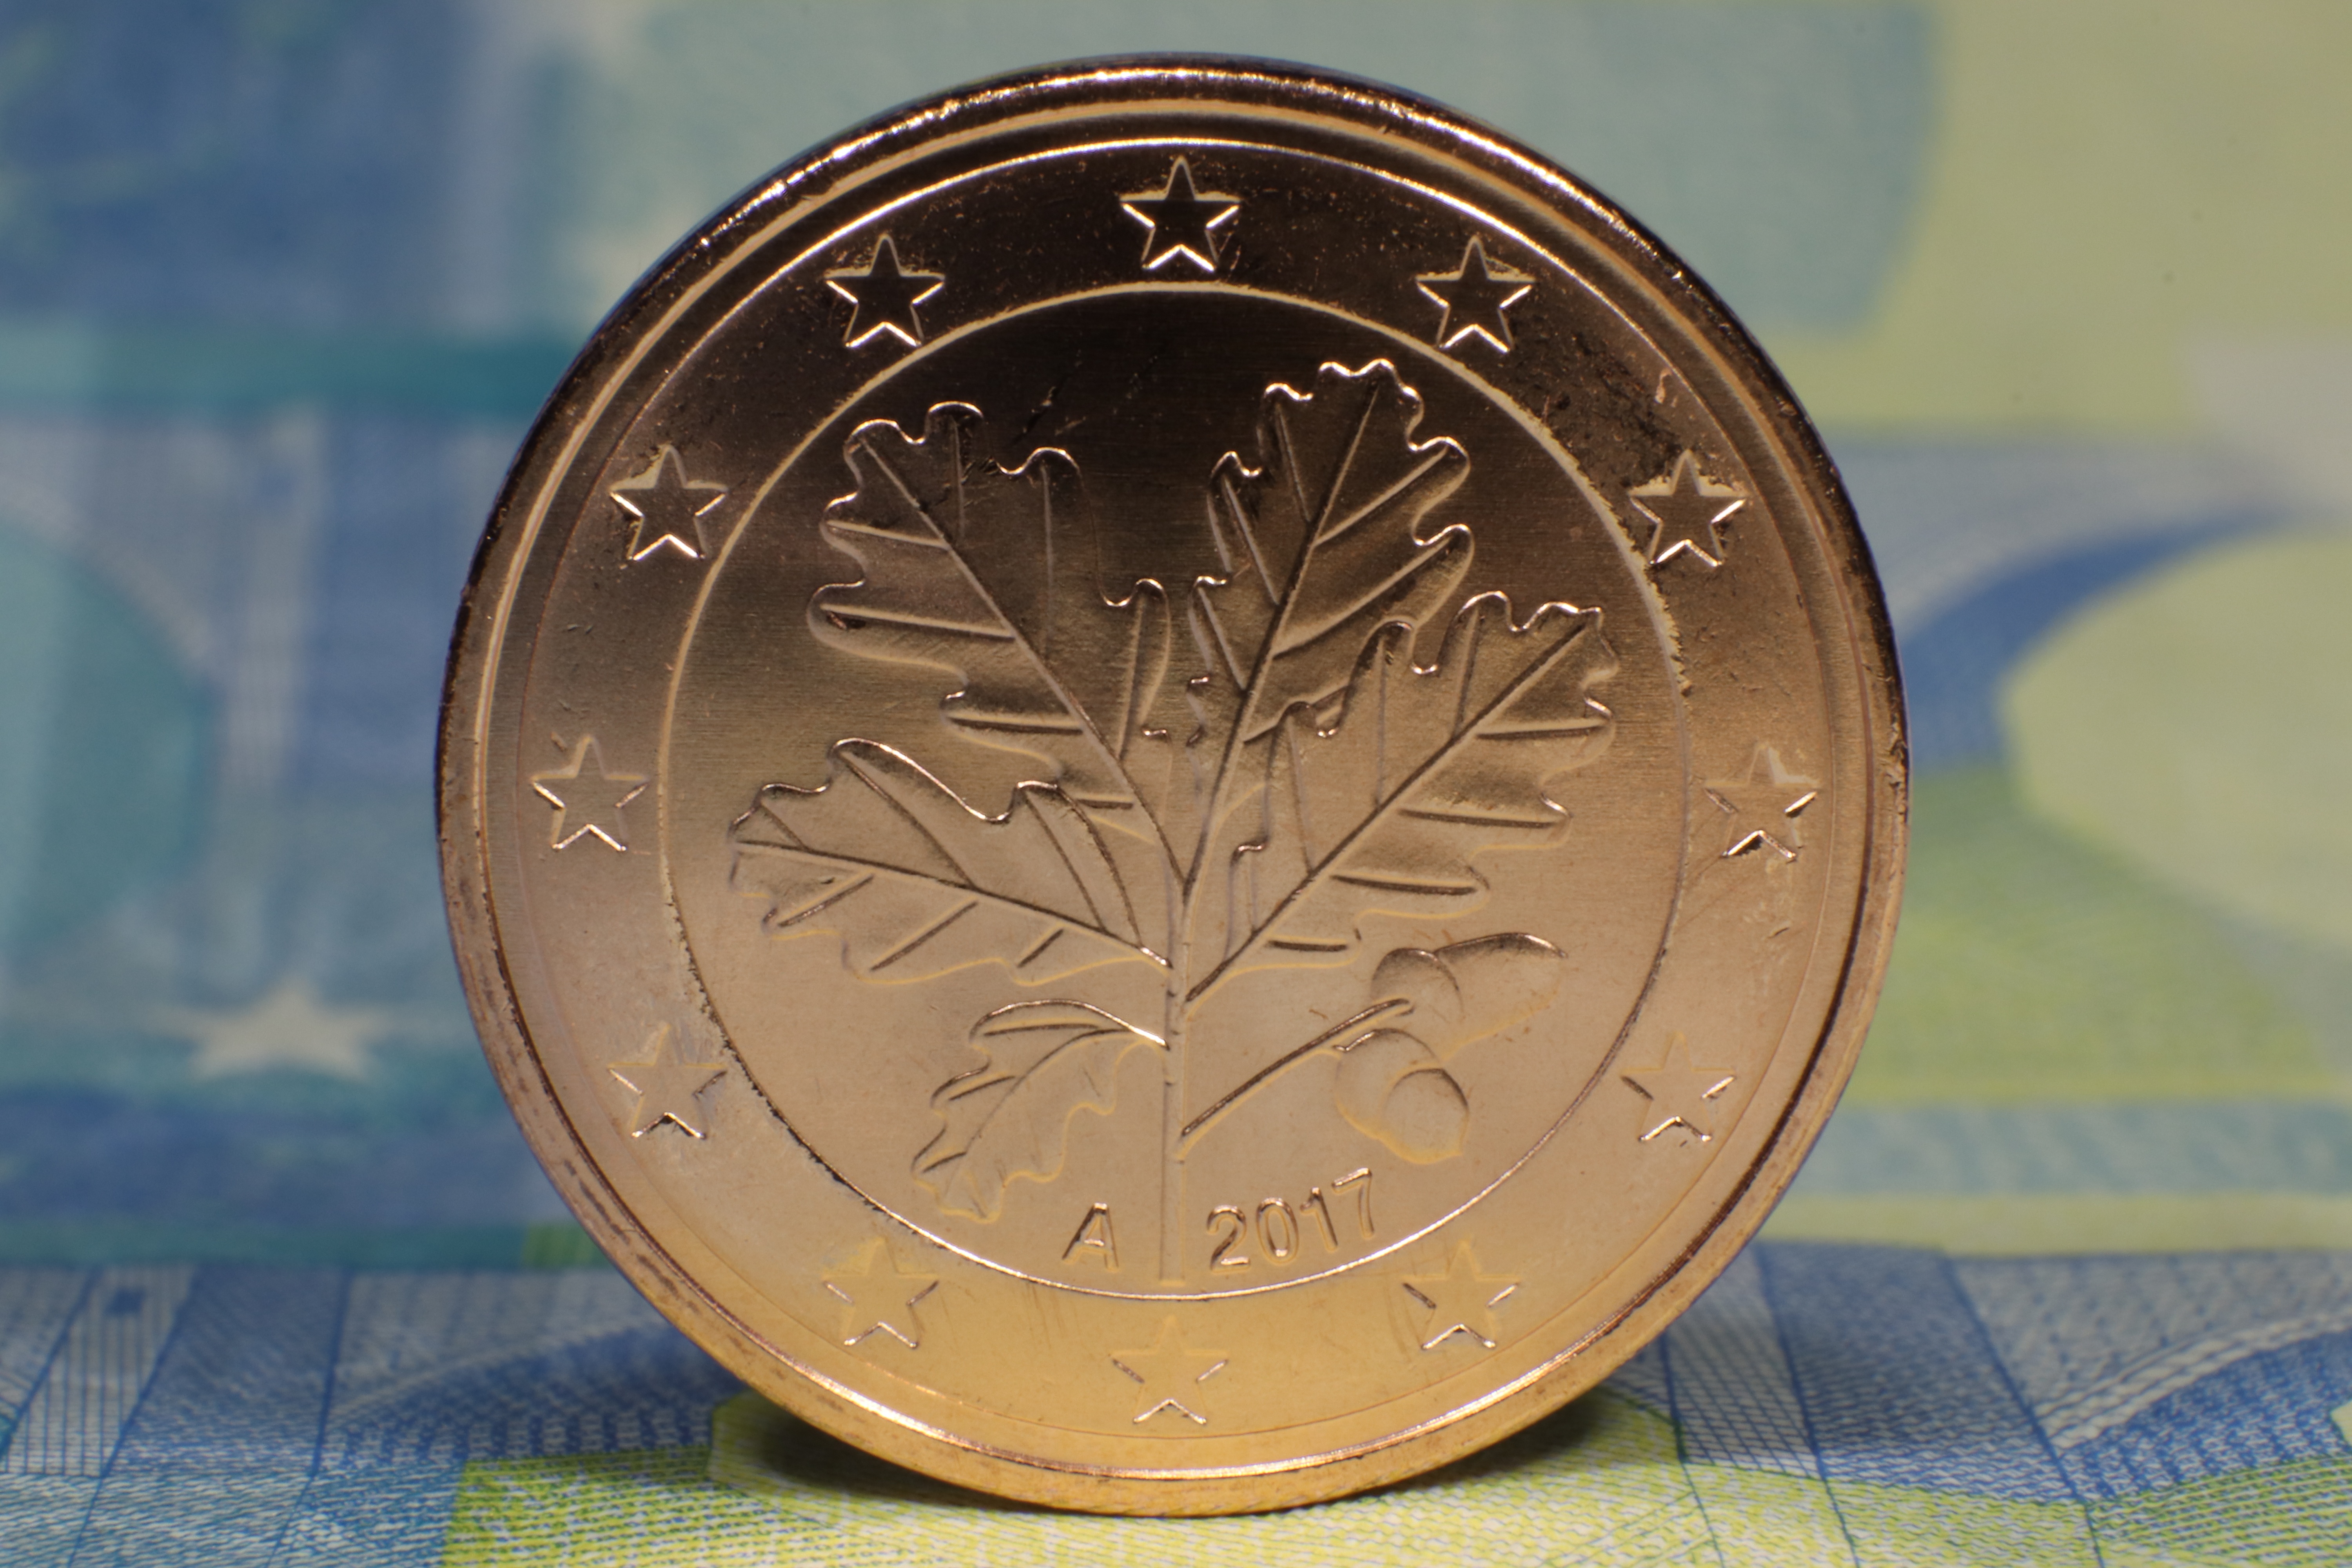 6 евро. Монеты проценты. 5 Евро центов с веткой дуба. Фотография монеты с процентами. 5 Евро монета фото.